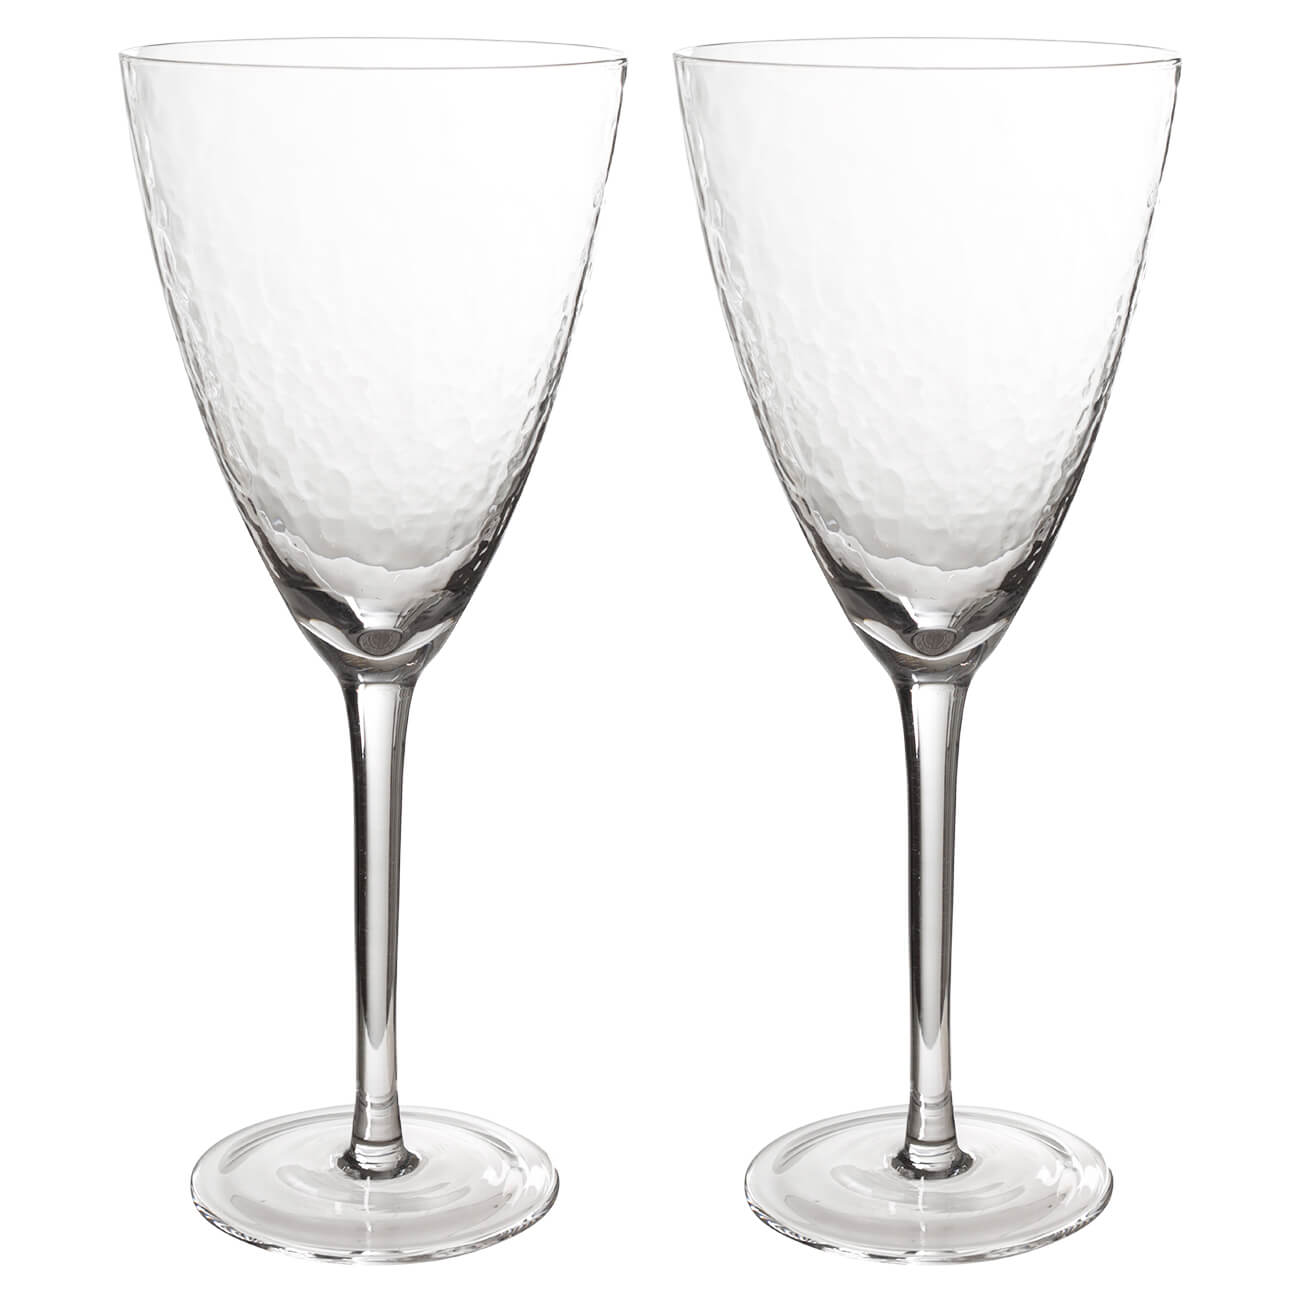 Бокал для вина, 400 мл, 2 шт, стекло, Ripply бокал для мартини 250 мл 2 шт стекло перламутр ripply polar